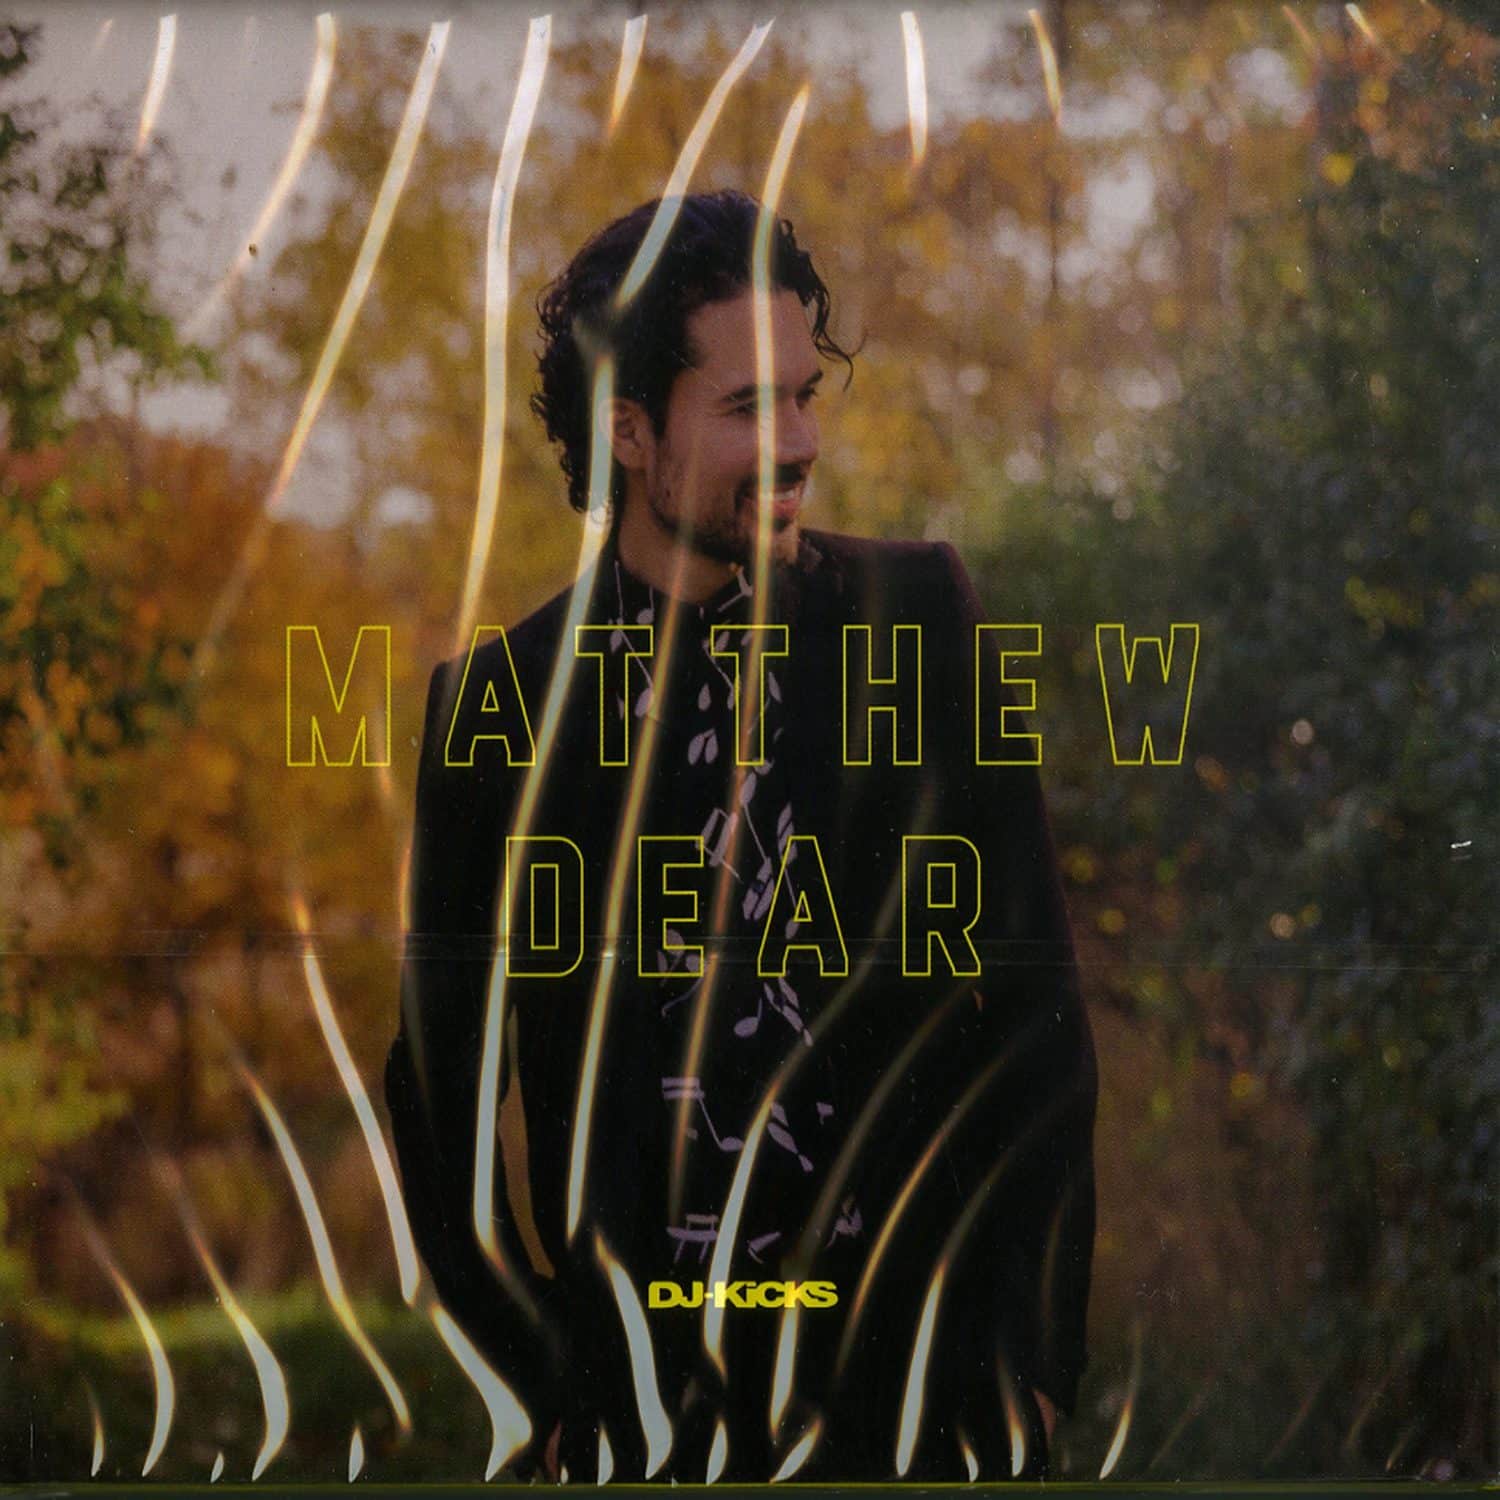 Matthew Dear - DJ KICKS 